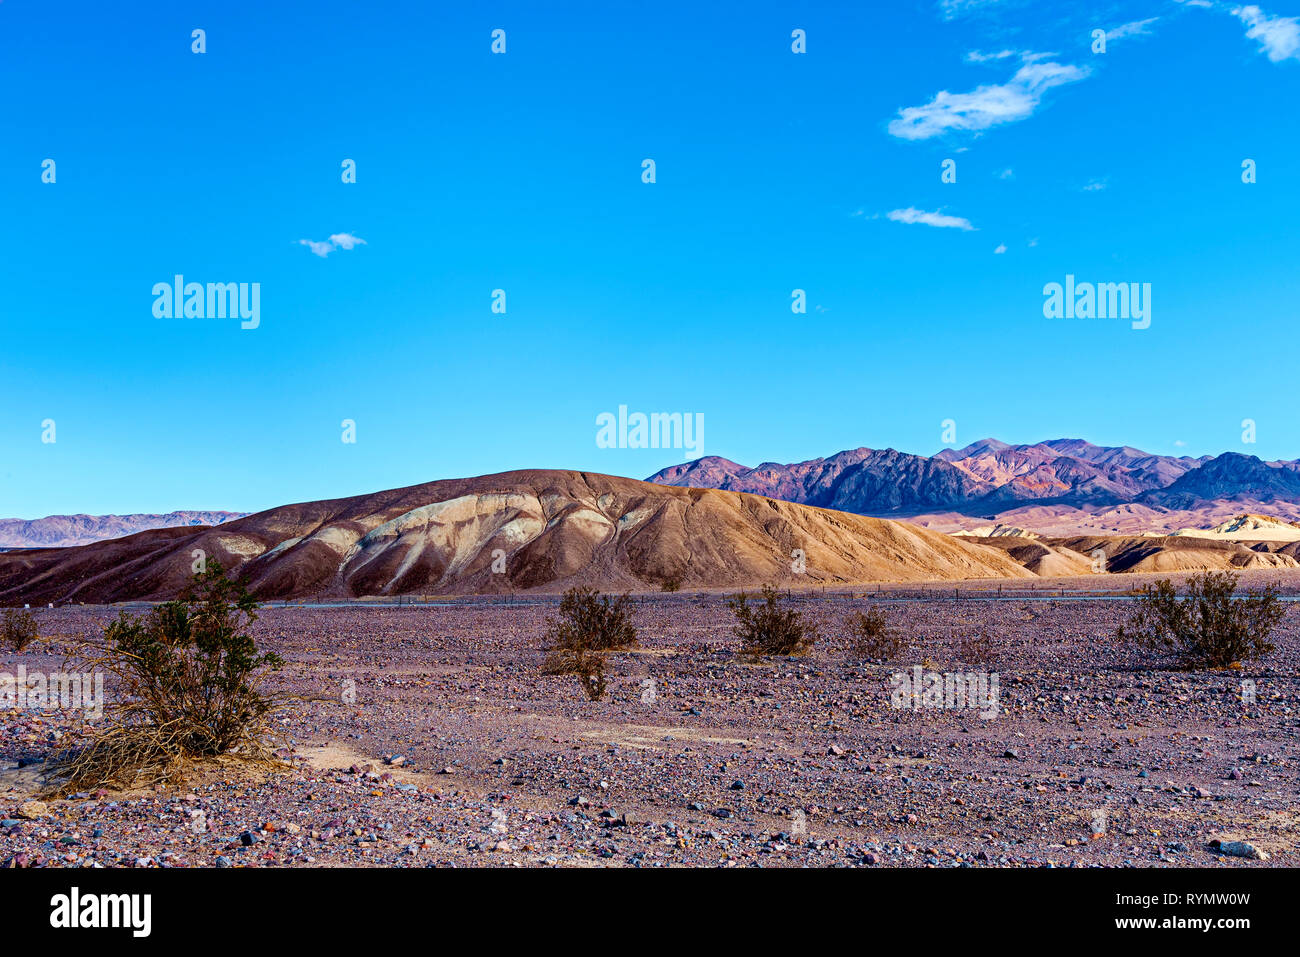 Deserto roccioso valley con piccoli cespugli di verde, giallo marrone colline e aride montagne rocciose al di là sotto un cielo azzurro con soffici nuvole. Foto Stock